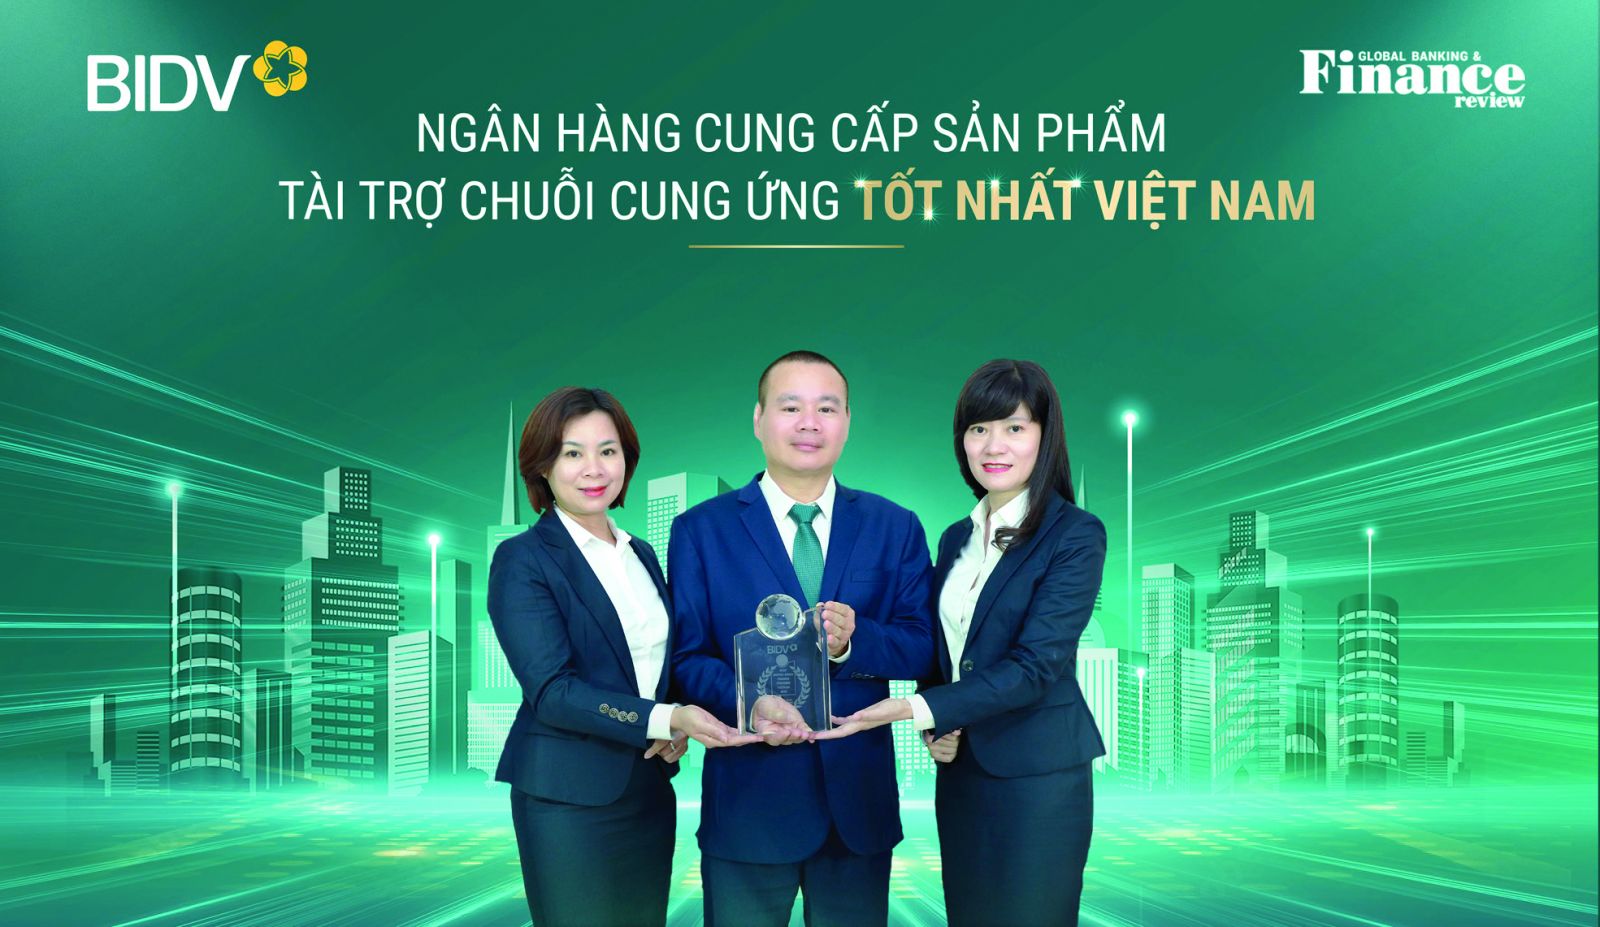 p/Đai diện BIDV nhận giải thưởng Ngân hàng cung cấp sản phẩm Tài trợ chuỗi cung ứng tốt nhất Việt Nam.